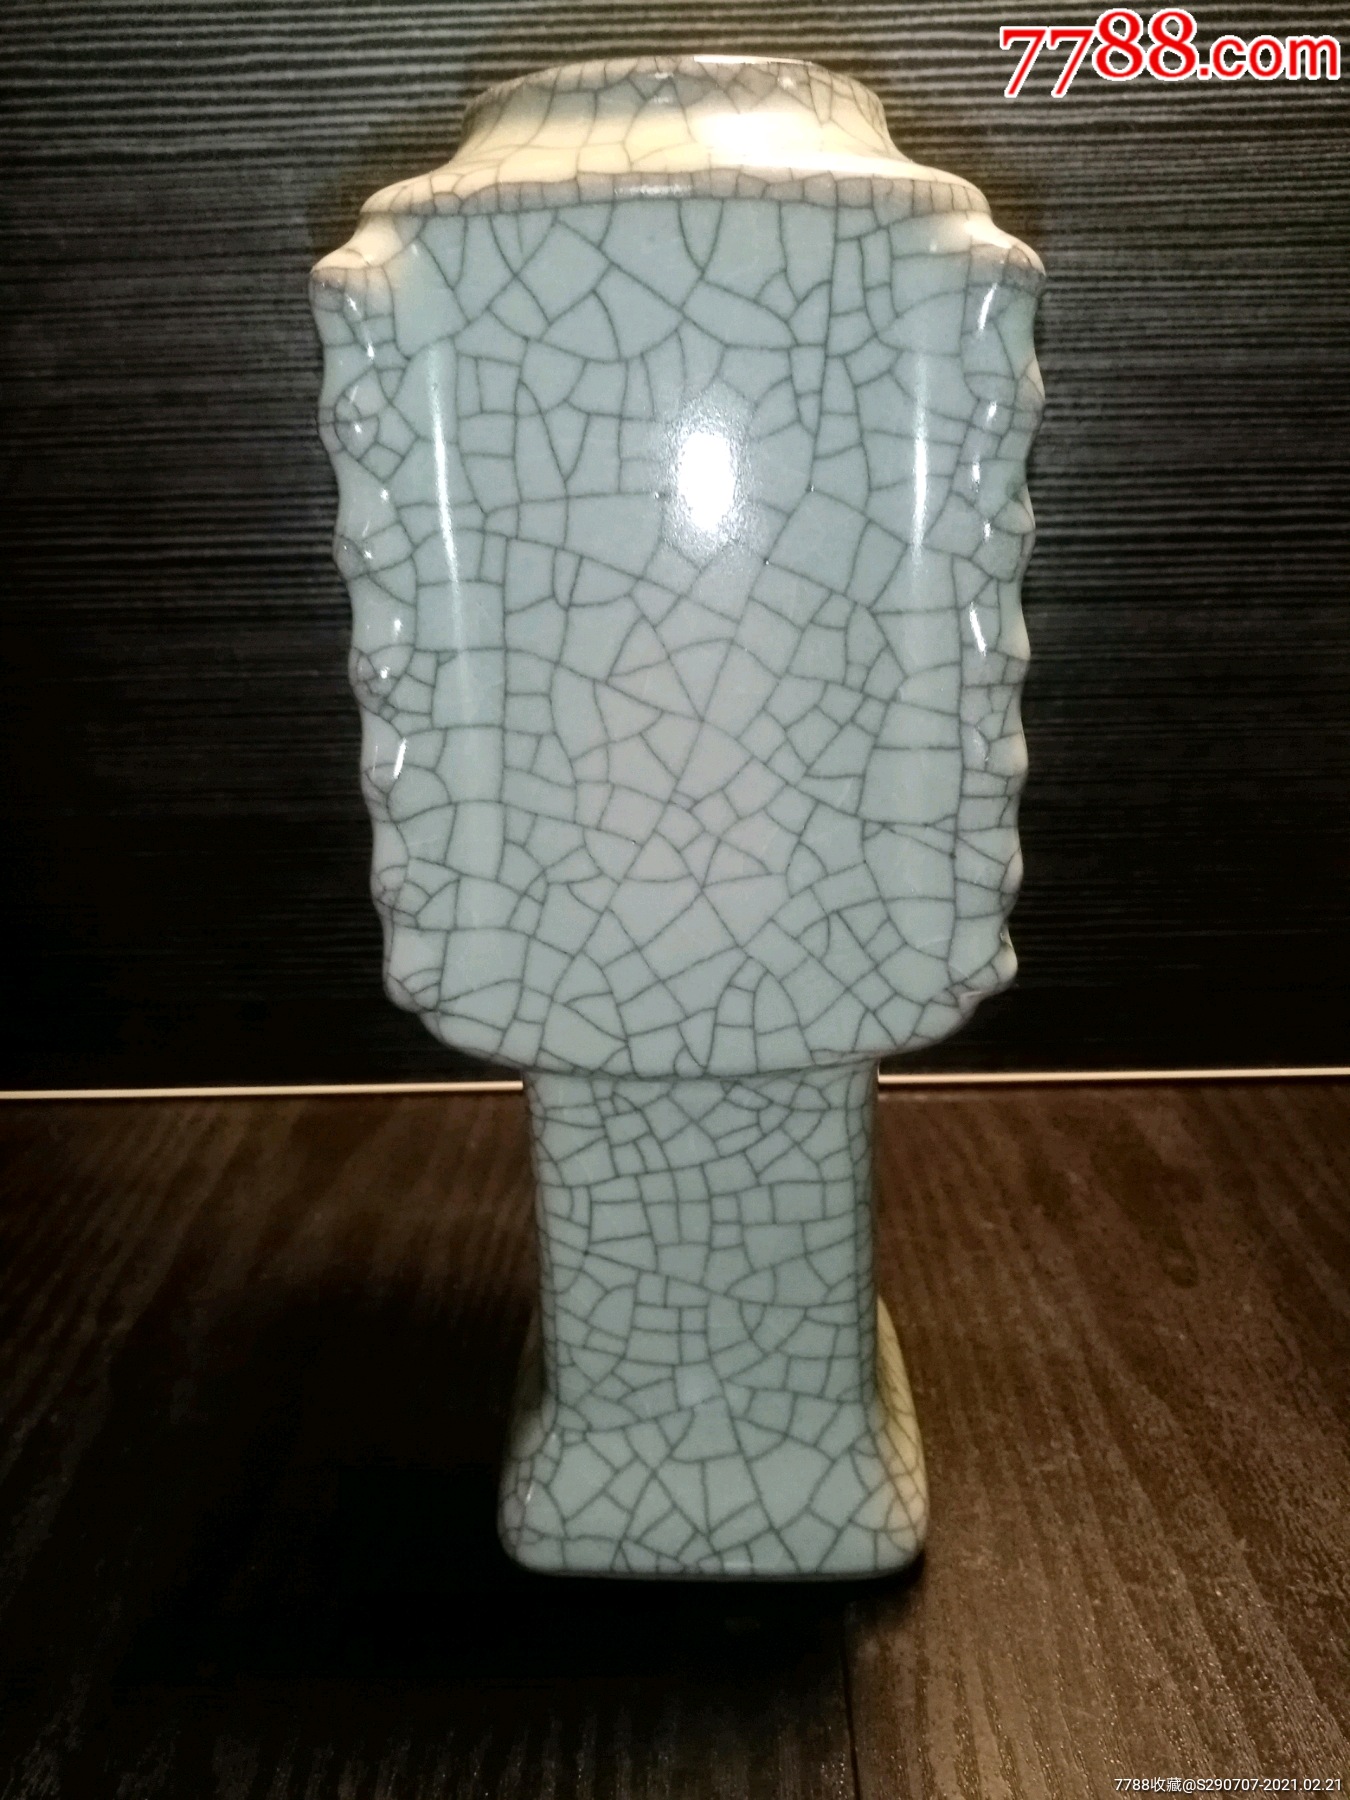 鼎式碎瓷花瓶